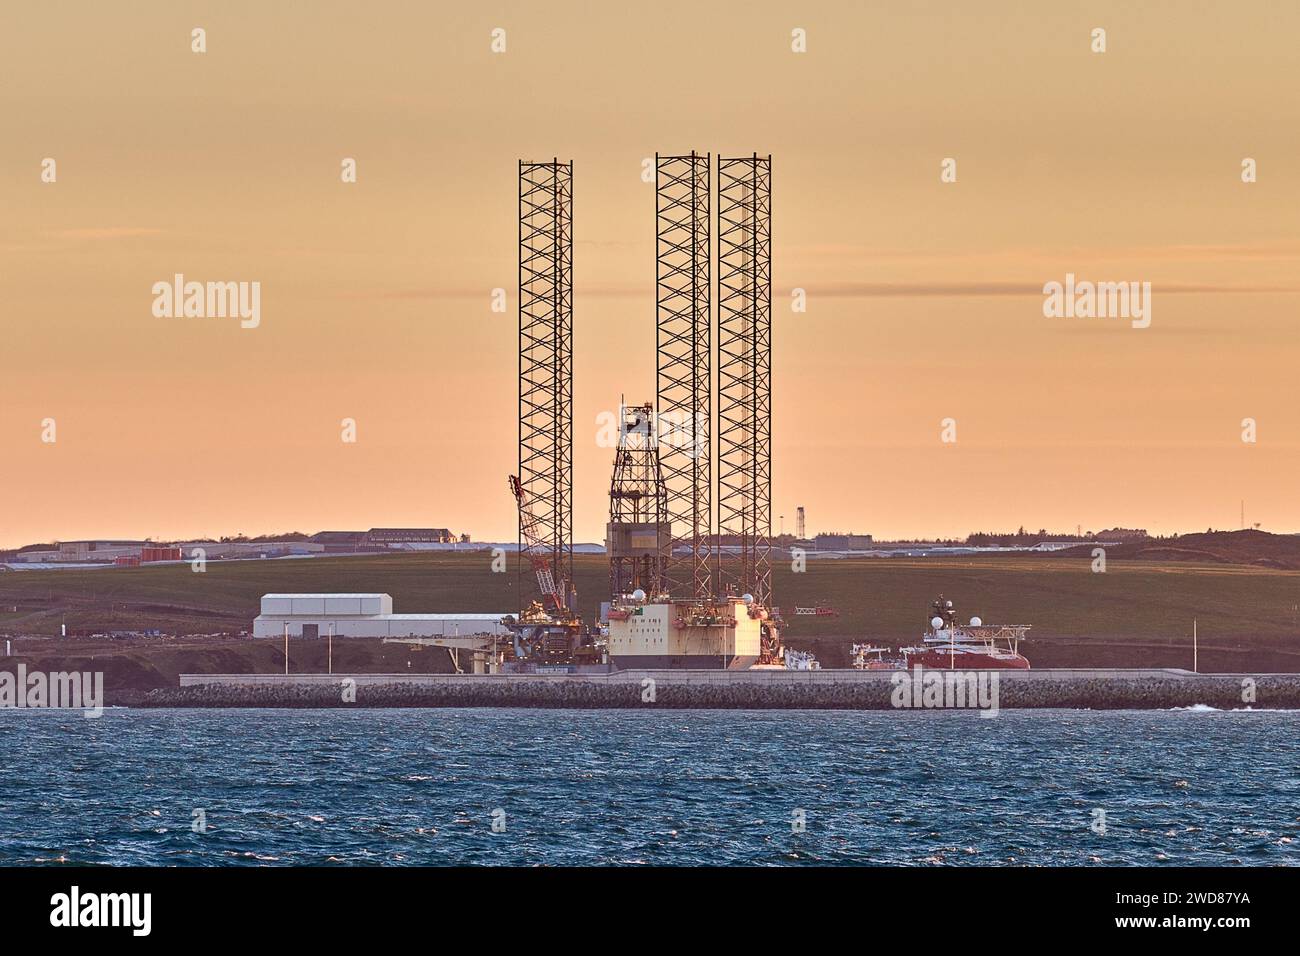 Vue panoramique de la plate-forme de forage au port pendant le coucher du soleil. Banque D'Images